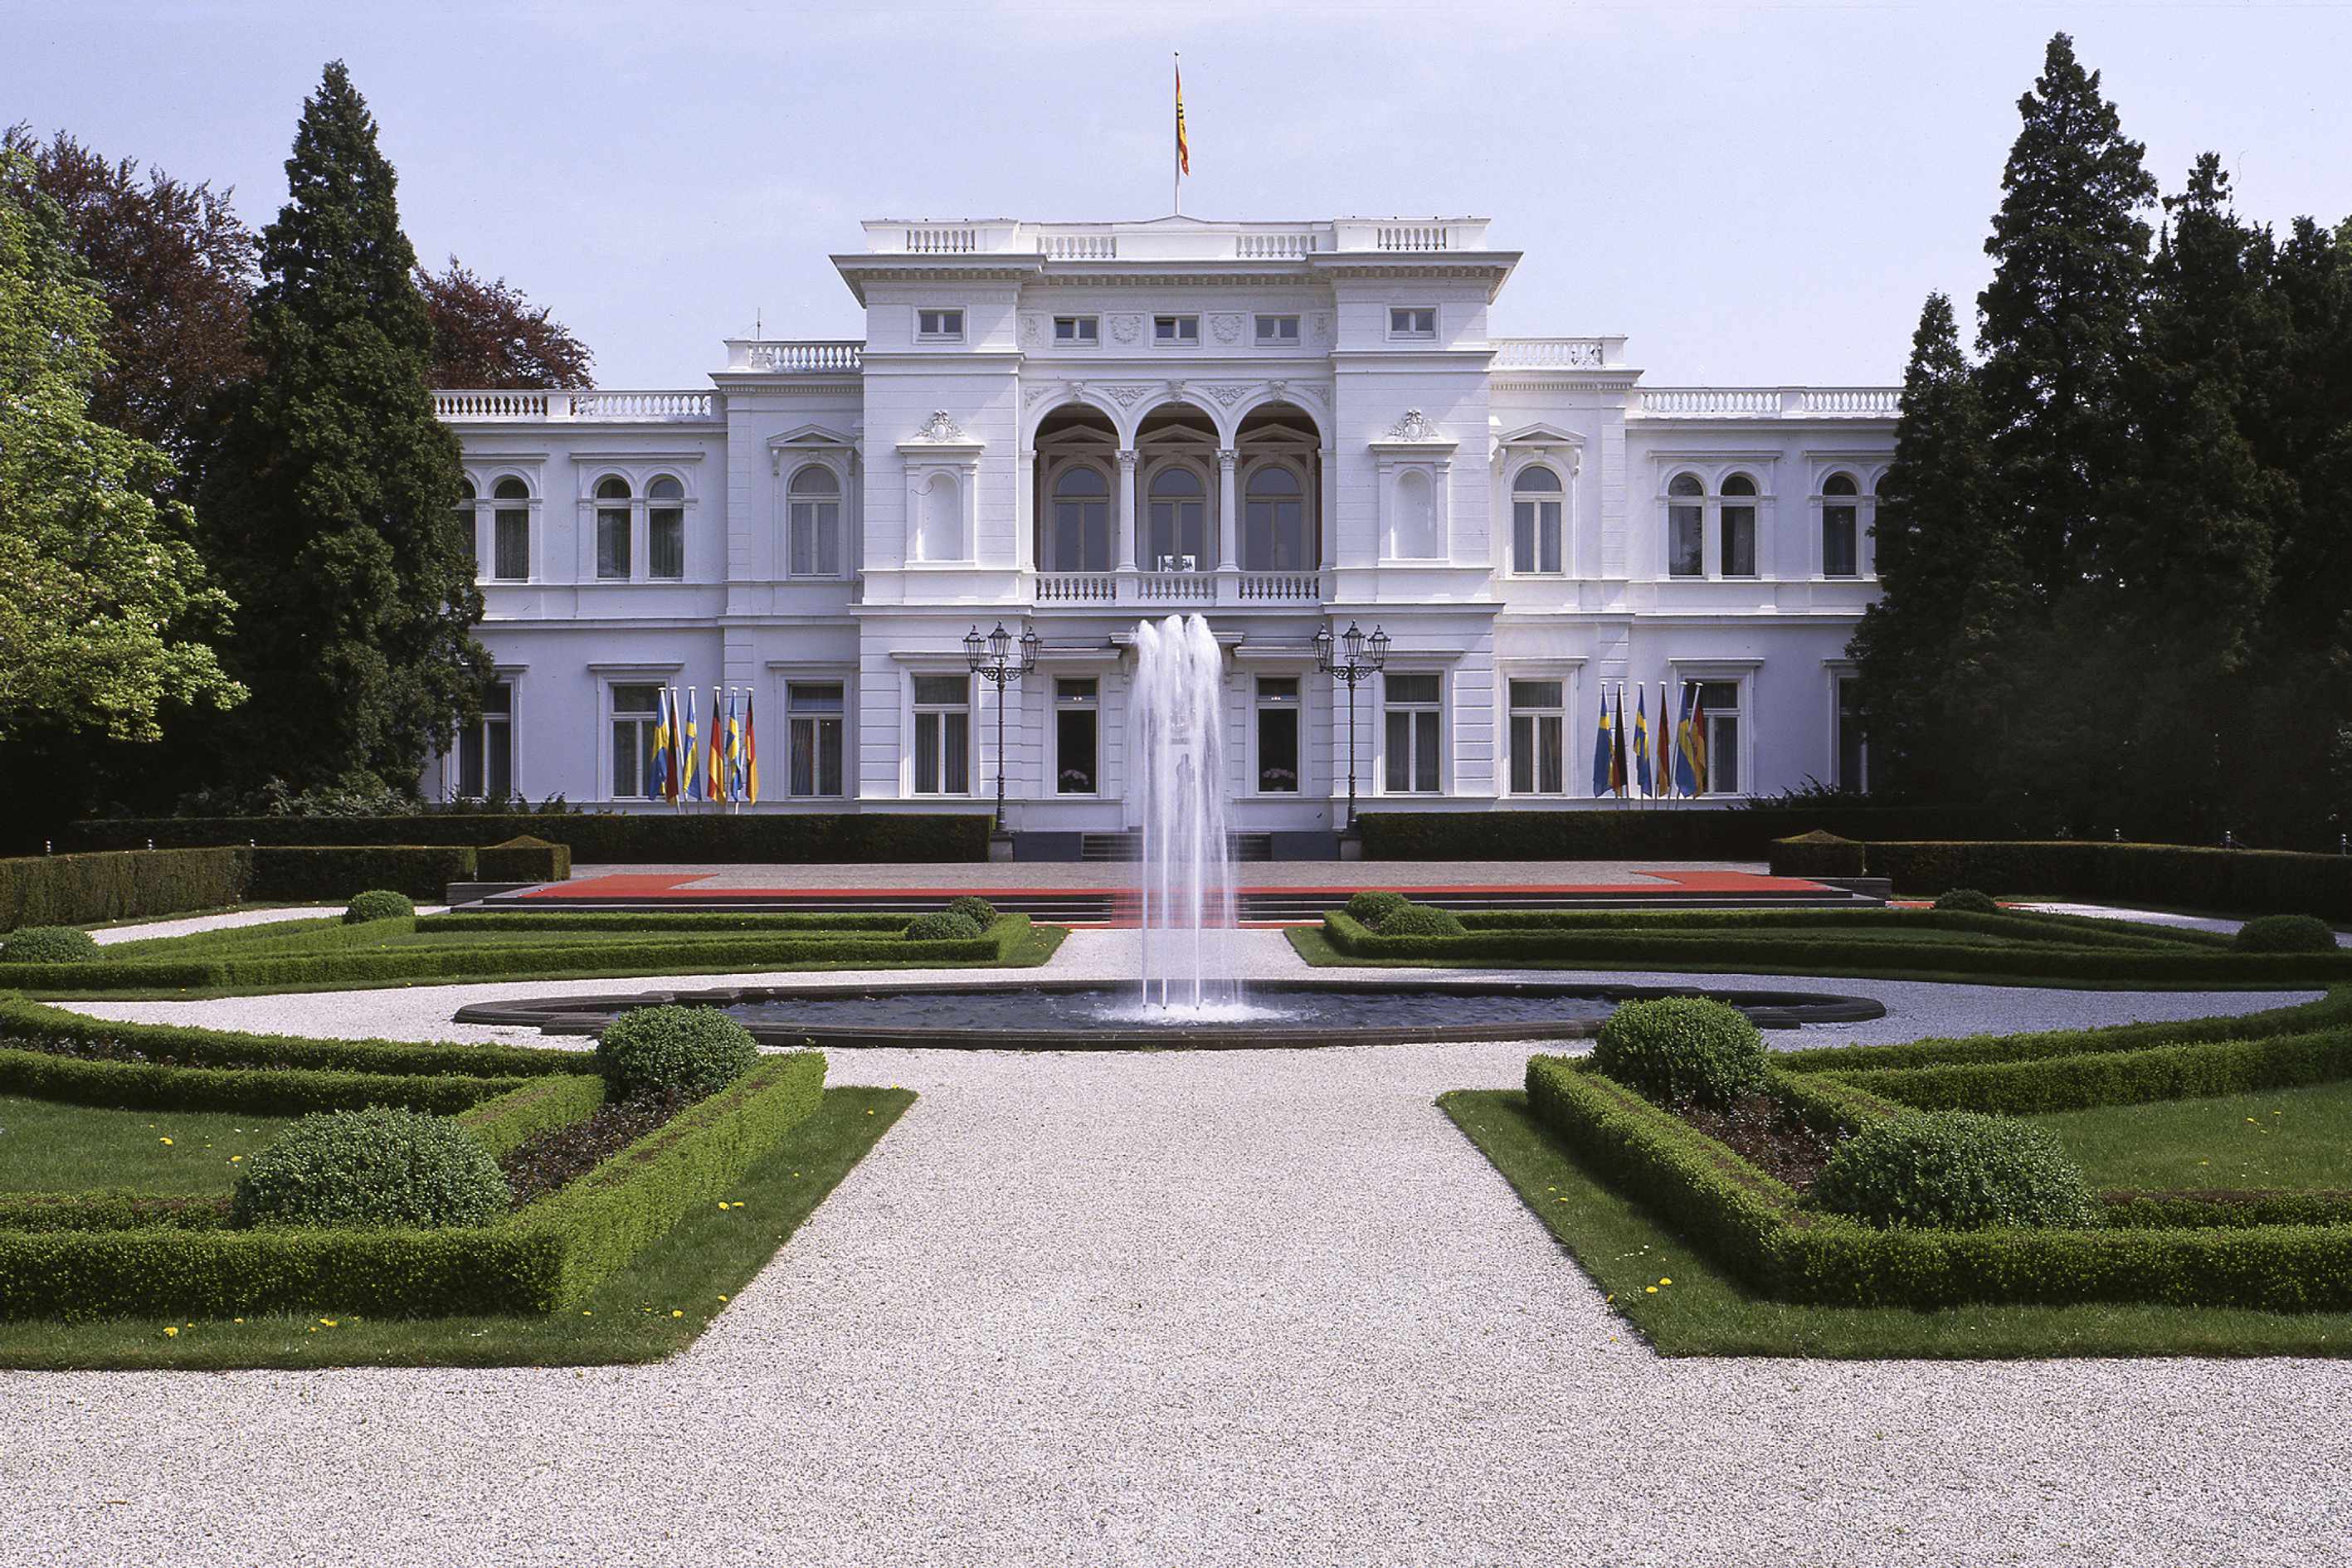 Bonn. Rhein. Ehemaliges Bundesviertel. Villa Hammerschmidt. Michael Sondermann. Stadt Bonn.